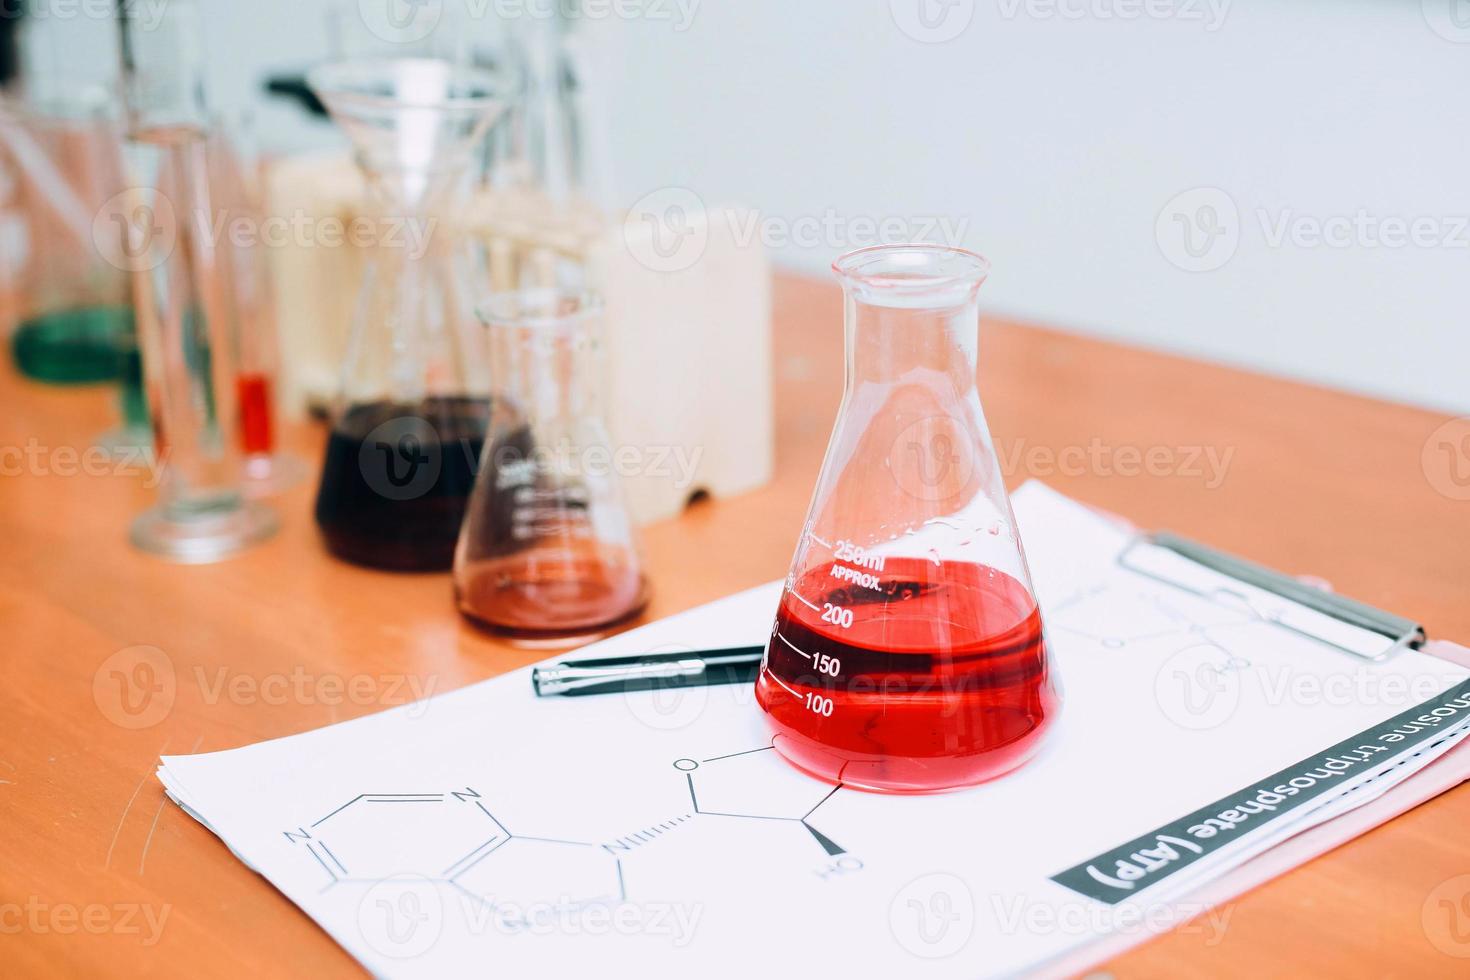 rote Flüssigkeit auf Becherglas mit Laborgeräten auf dem Tisch. nationaler wissenschaftstag, weltwissenschaftstag foto